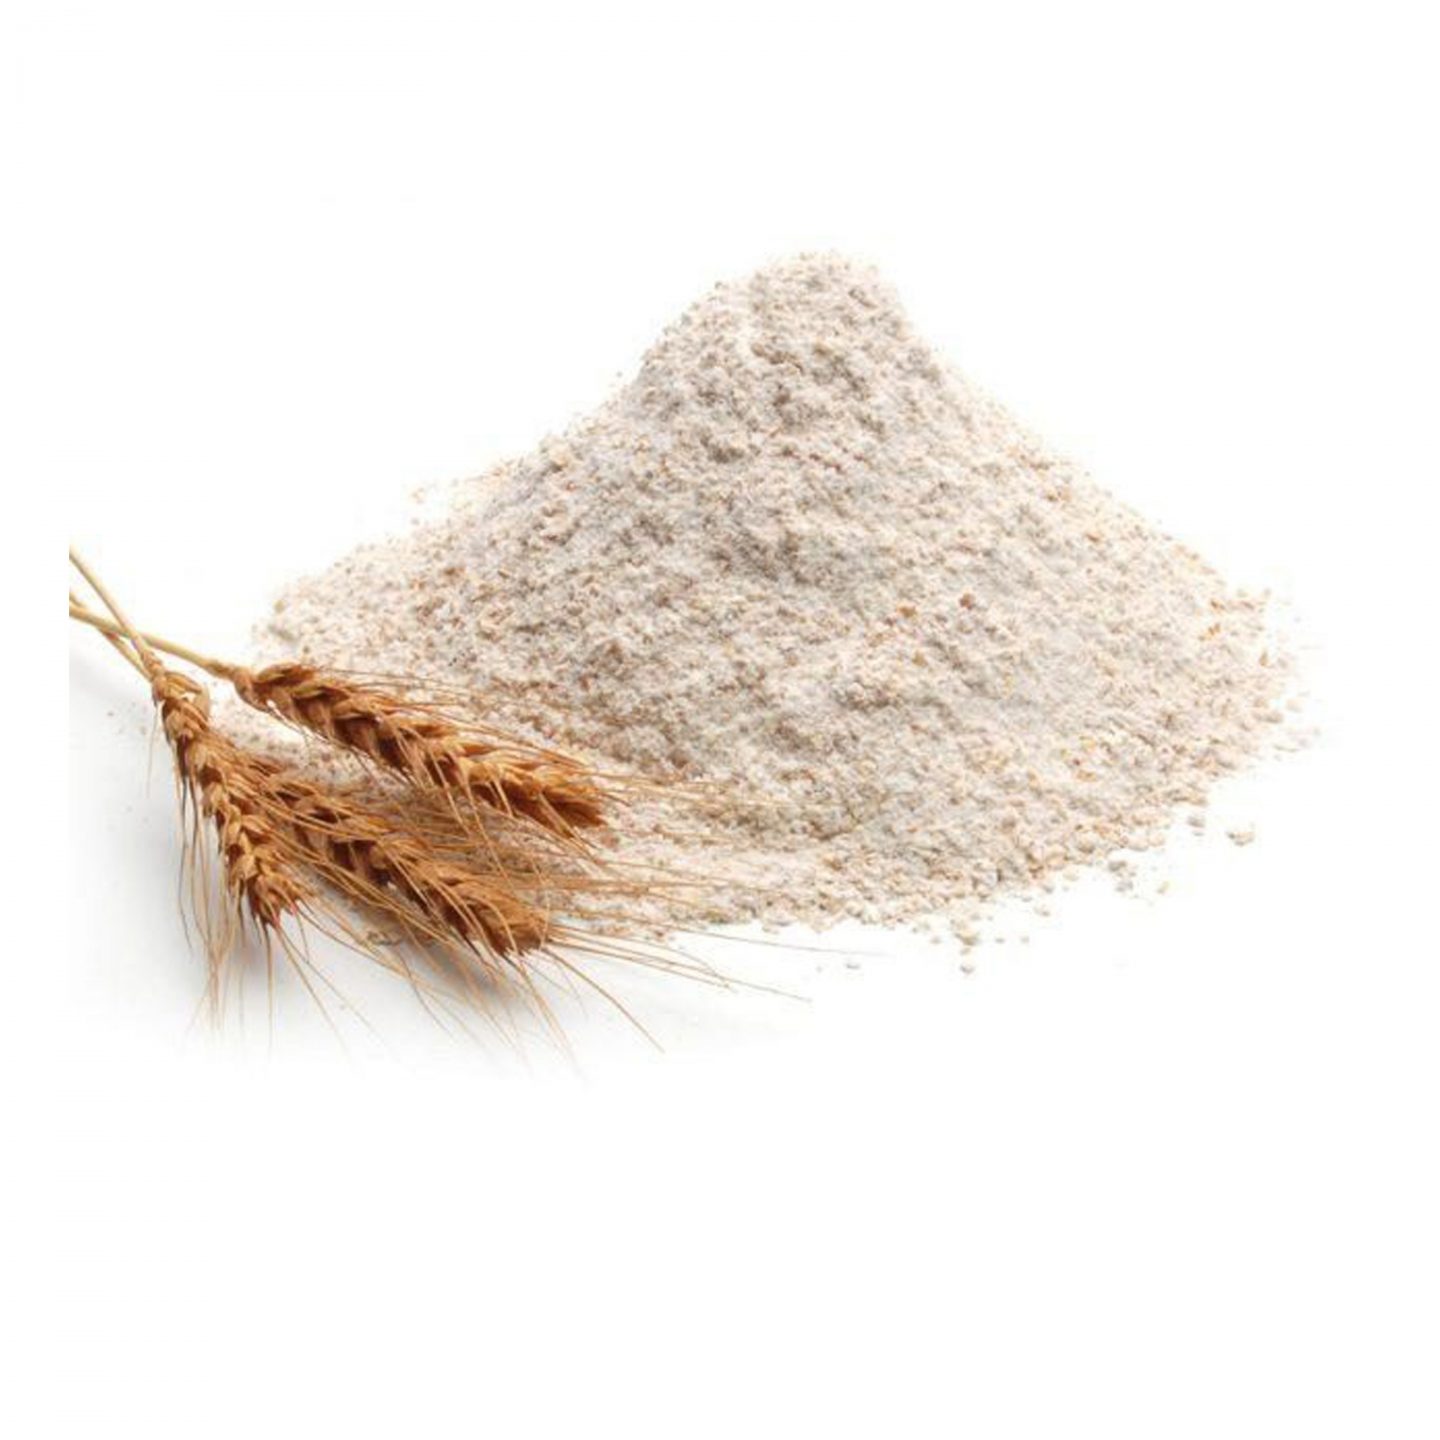 Farine de blé intégrale à pain biologique - La Milanaise